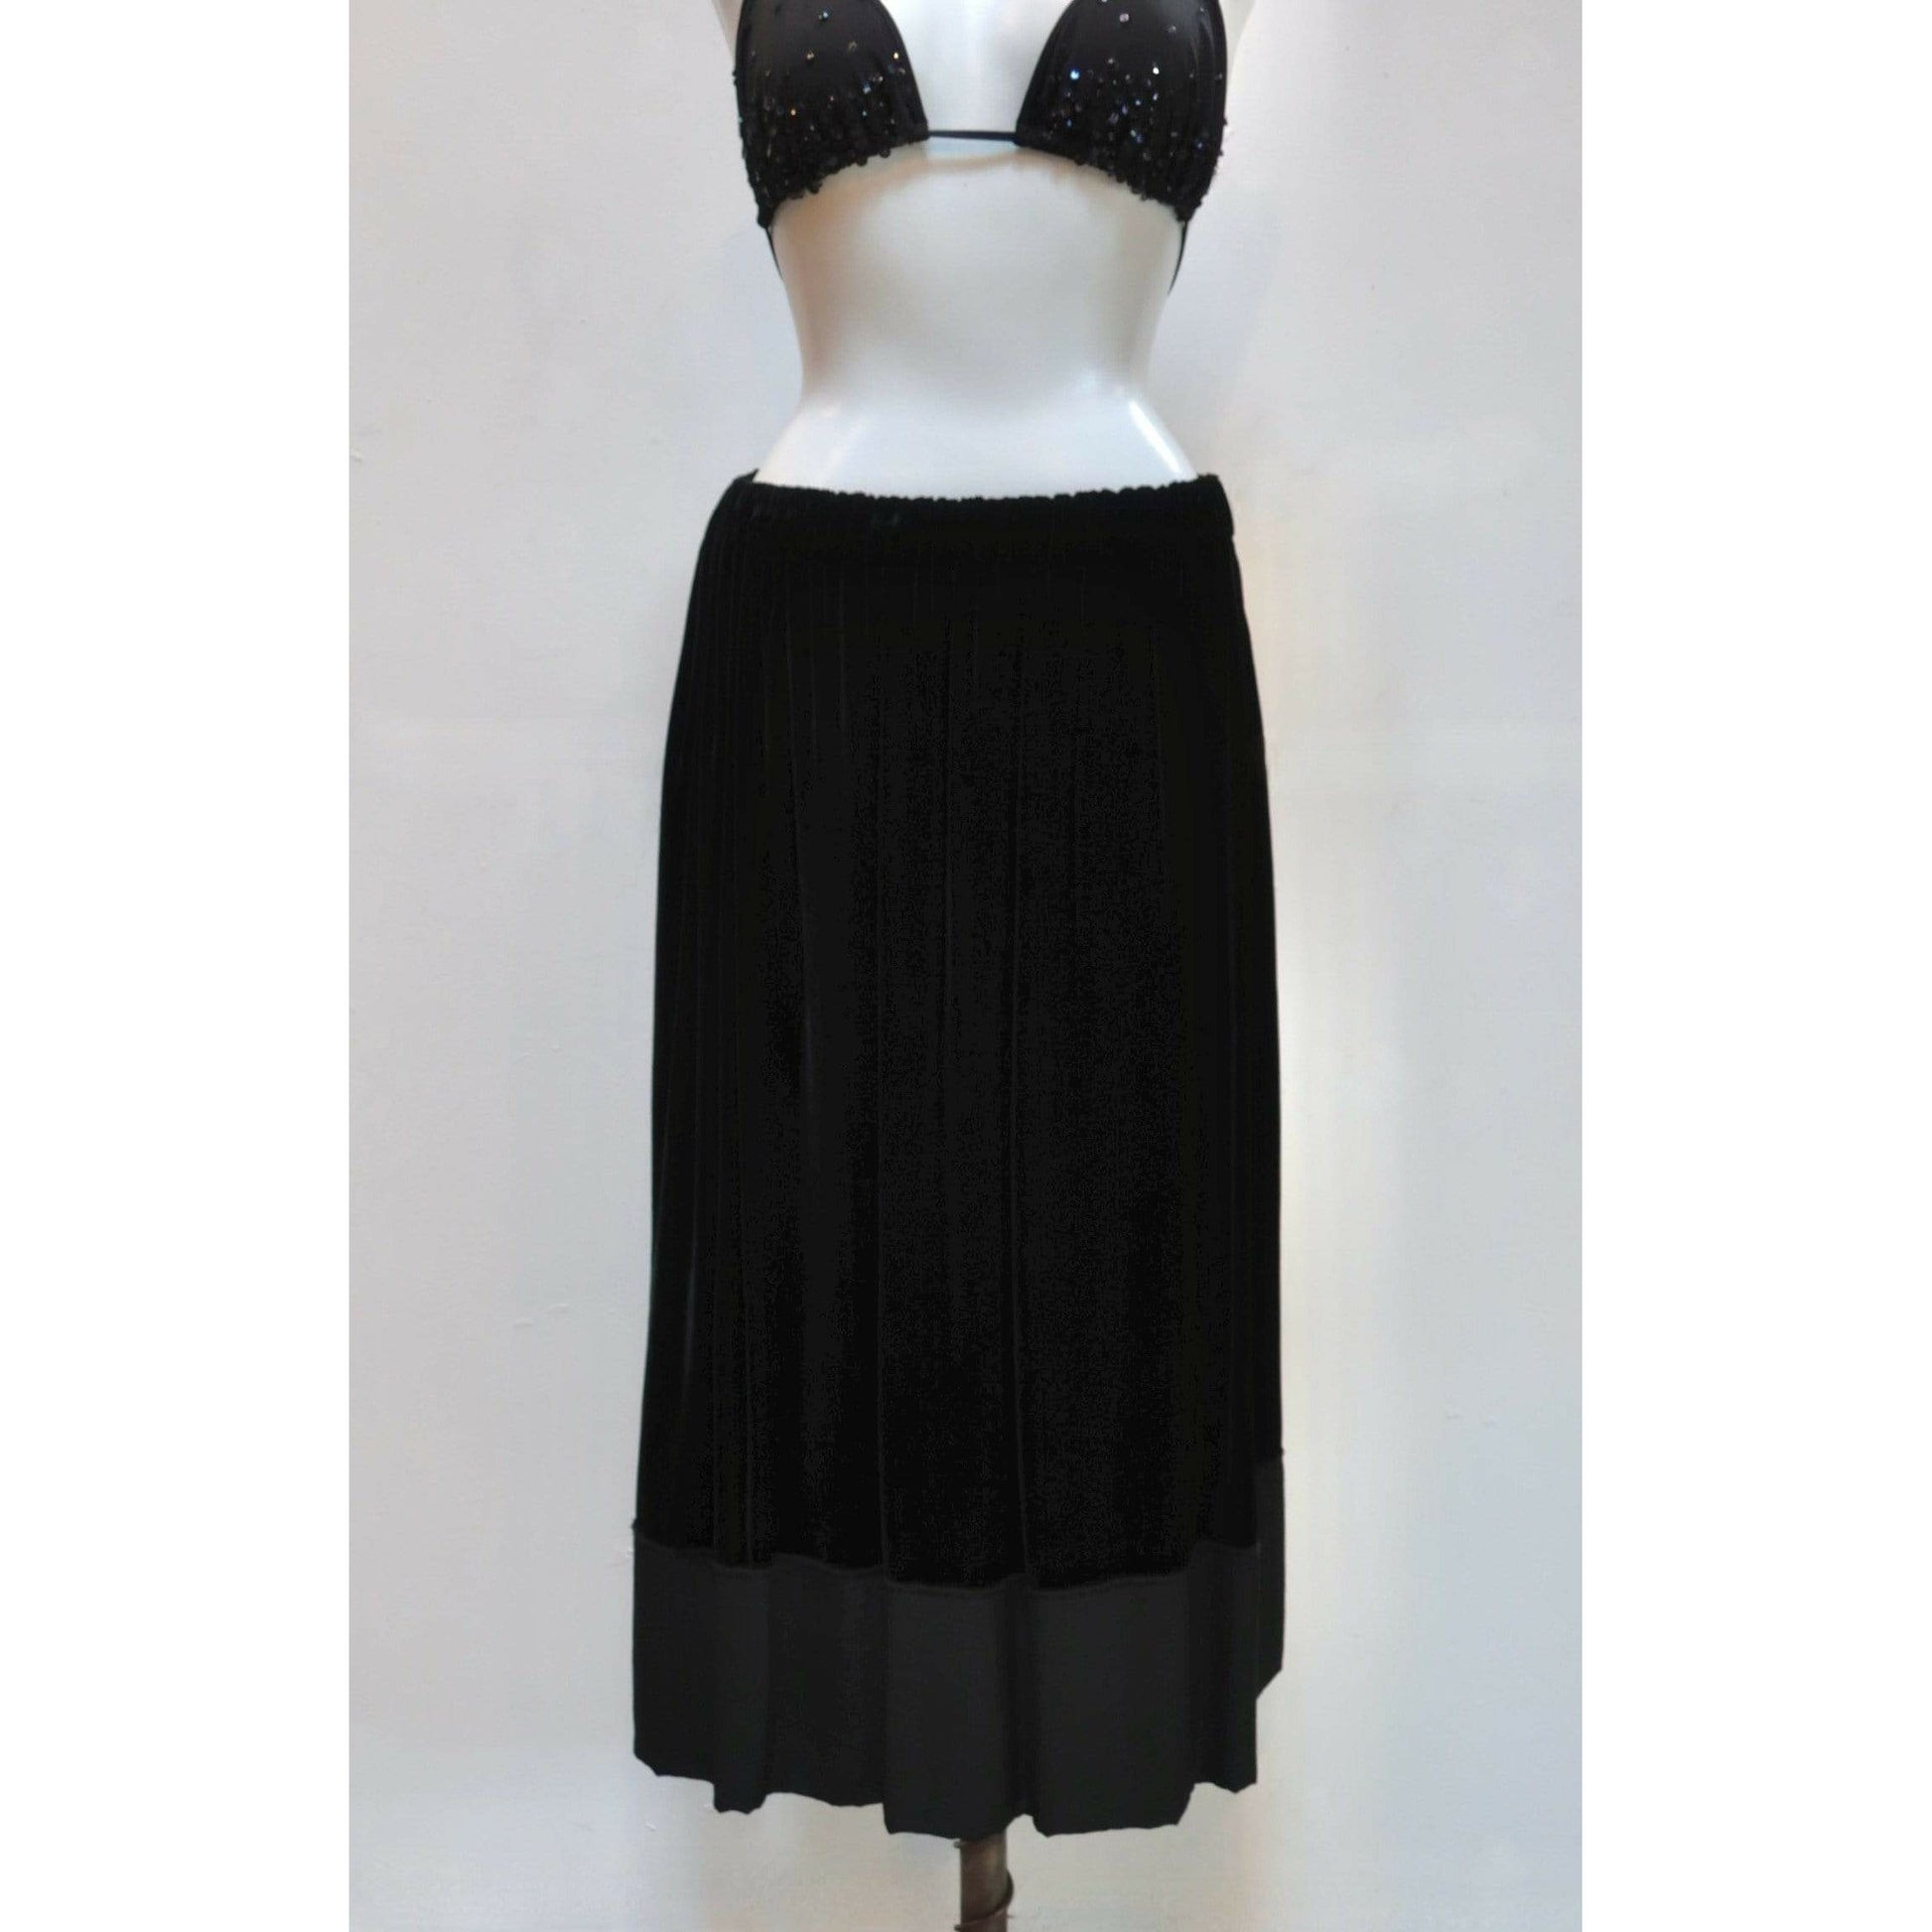 comme-des-garcons-black-velvet-drawstring-skirt Skirts Black